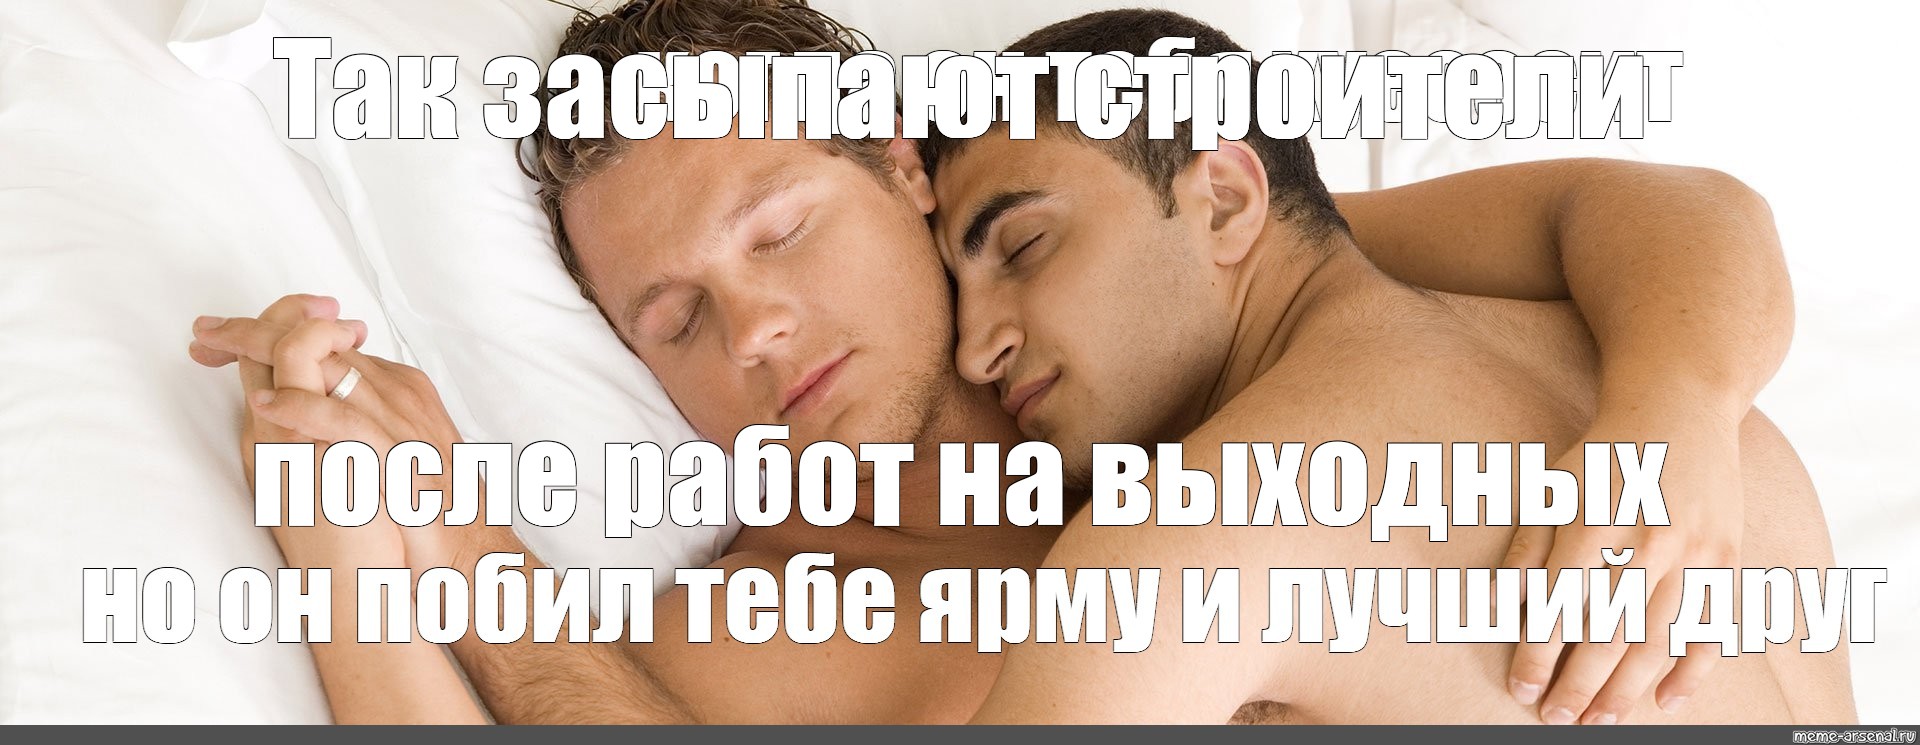 спать или не спать с парнем гей фото 43